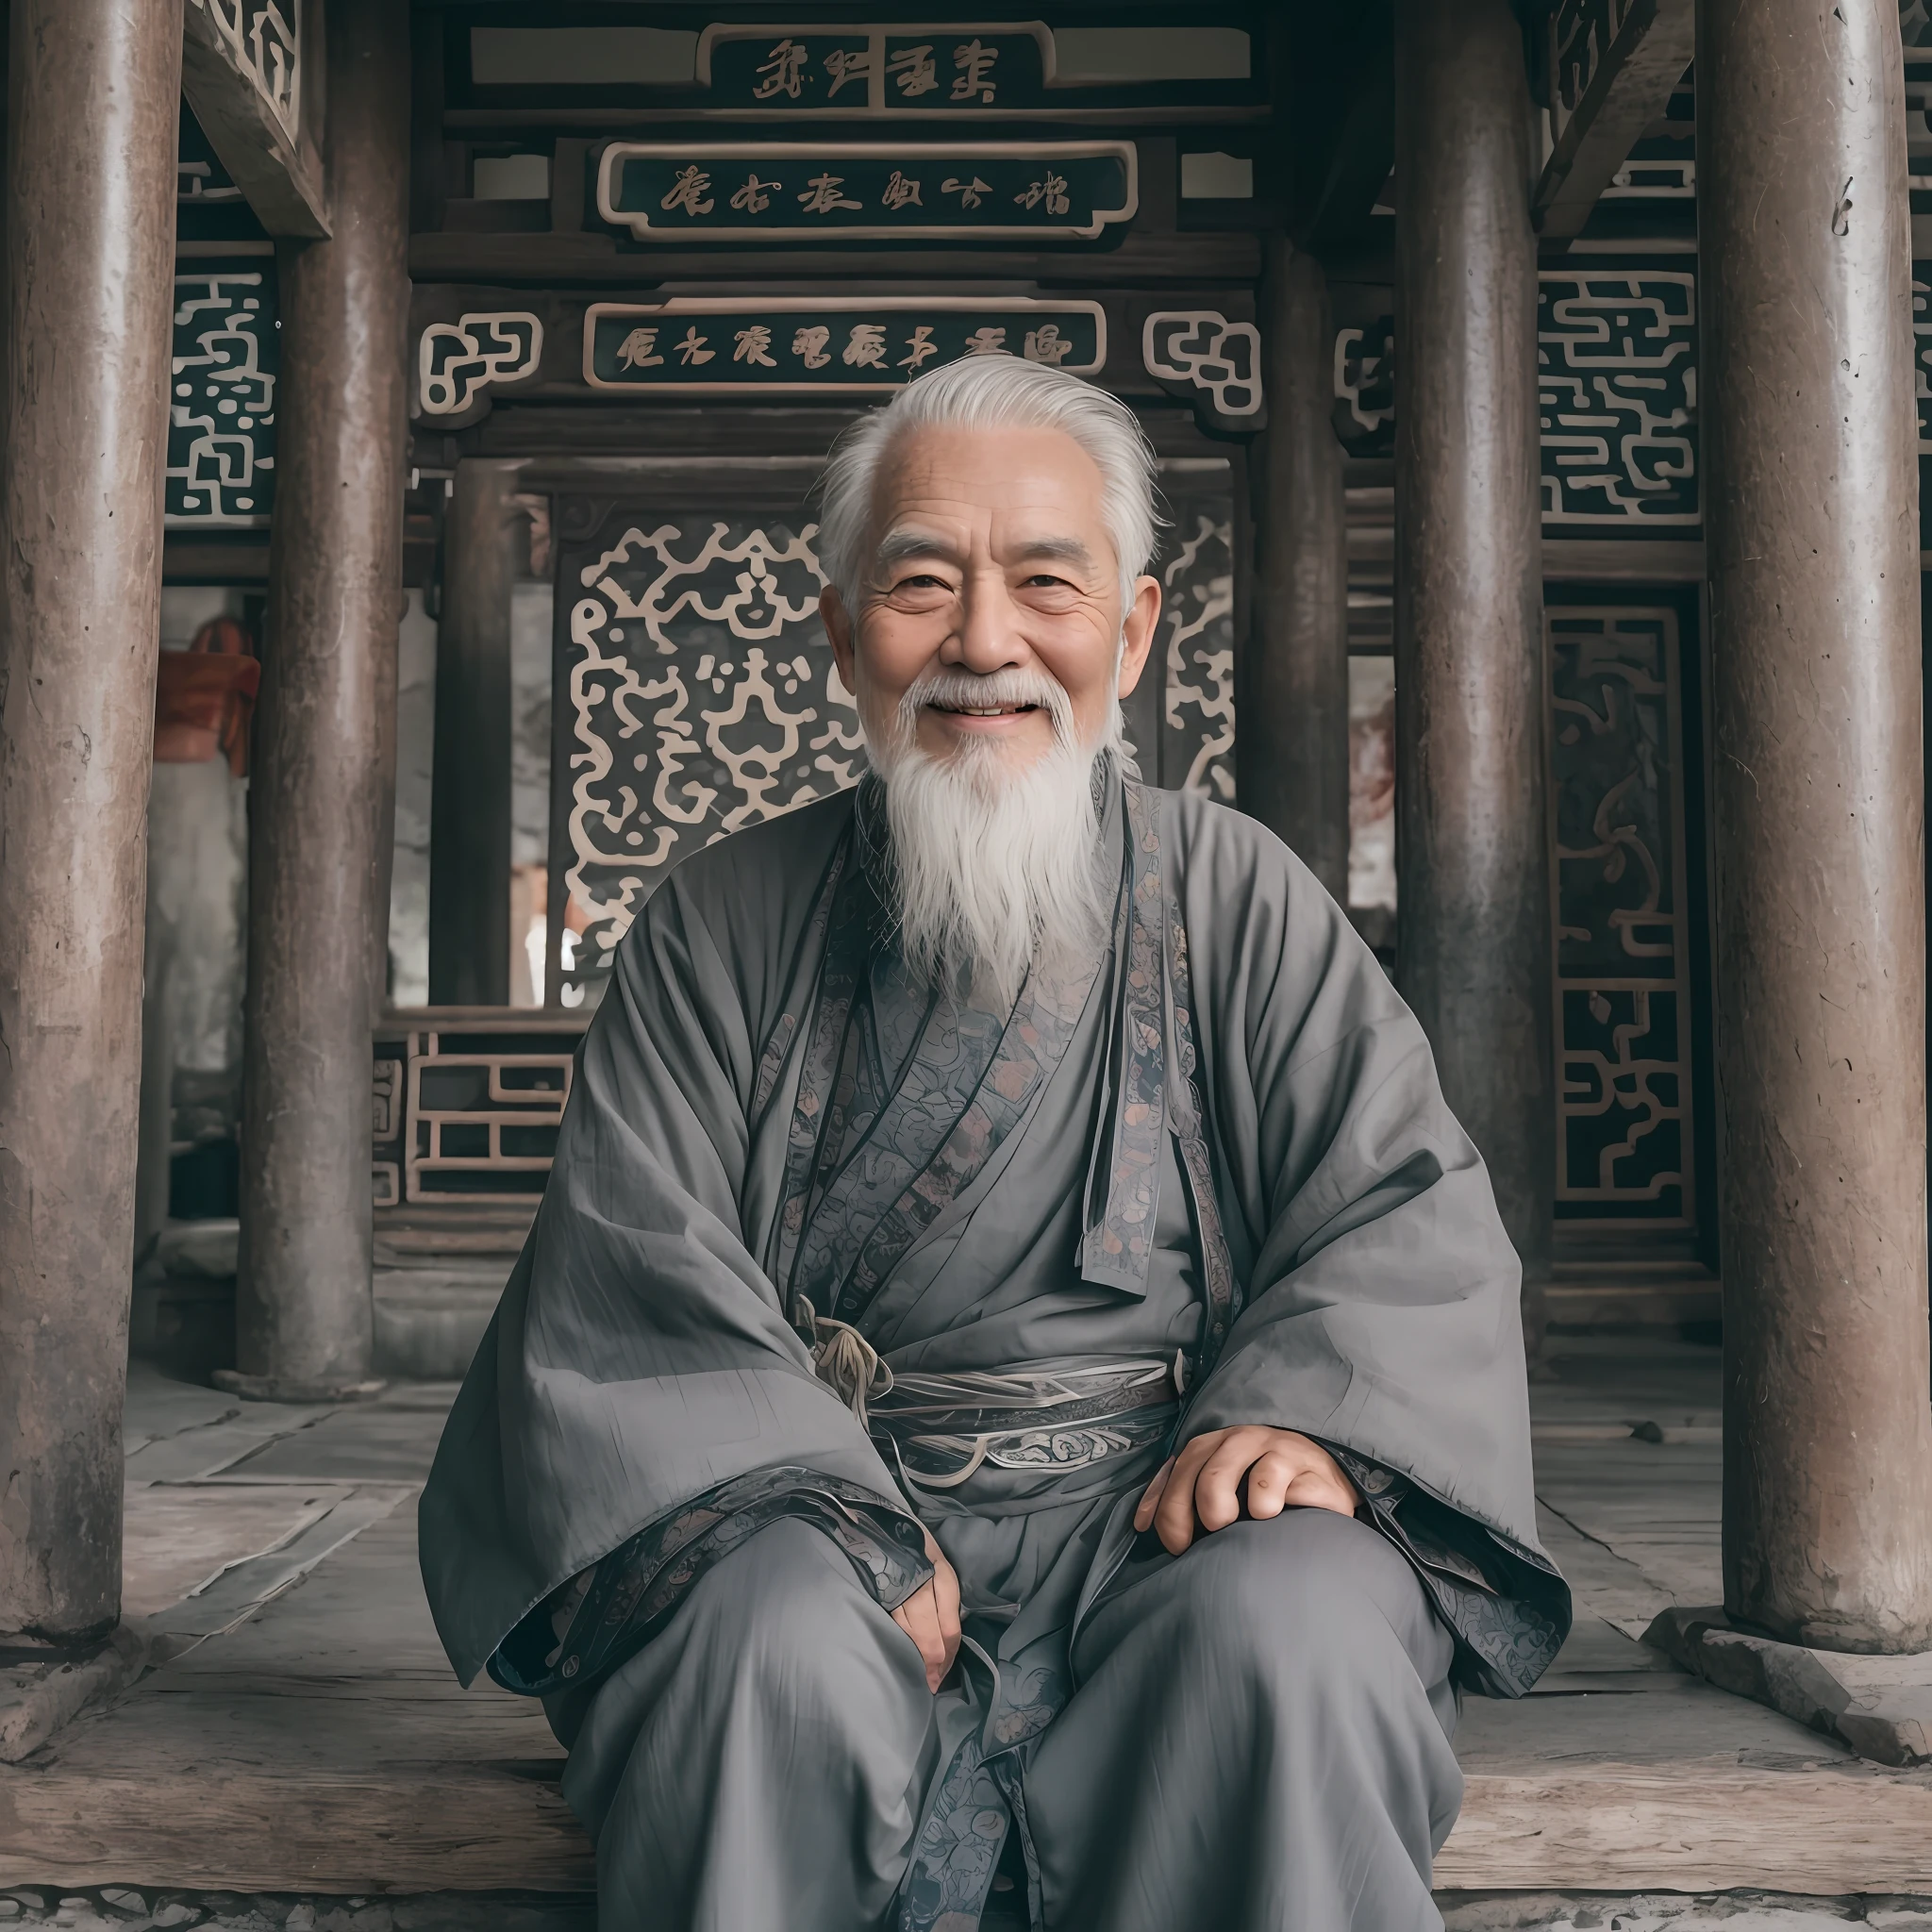 一個白髮蒼蒼的老人, 身著灰色中國古代服飾, 微笑著, 80歲,鏡頭中間,小白鬍子,古老的,
在室內, 中國道觀, 古老的 chinese temple,盘腿而坐,古老的 Chinese architecture,
中景, 最好的品質,拍到的,